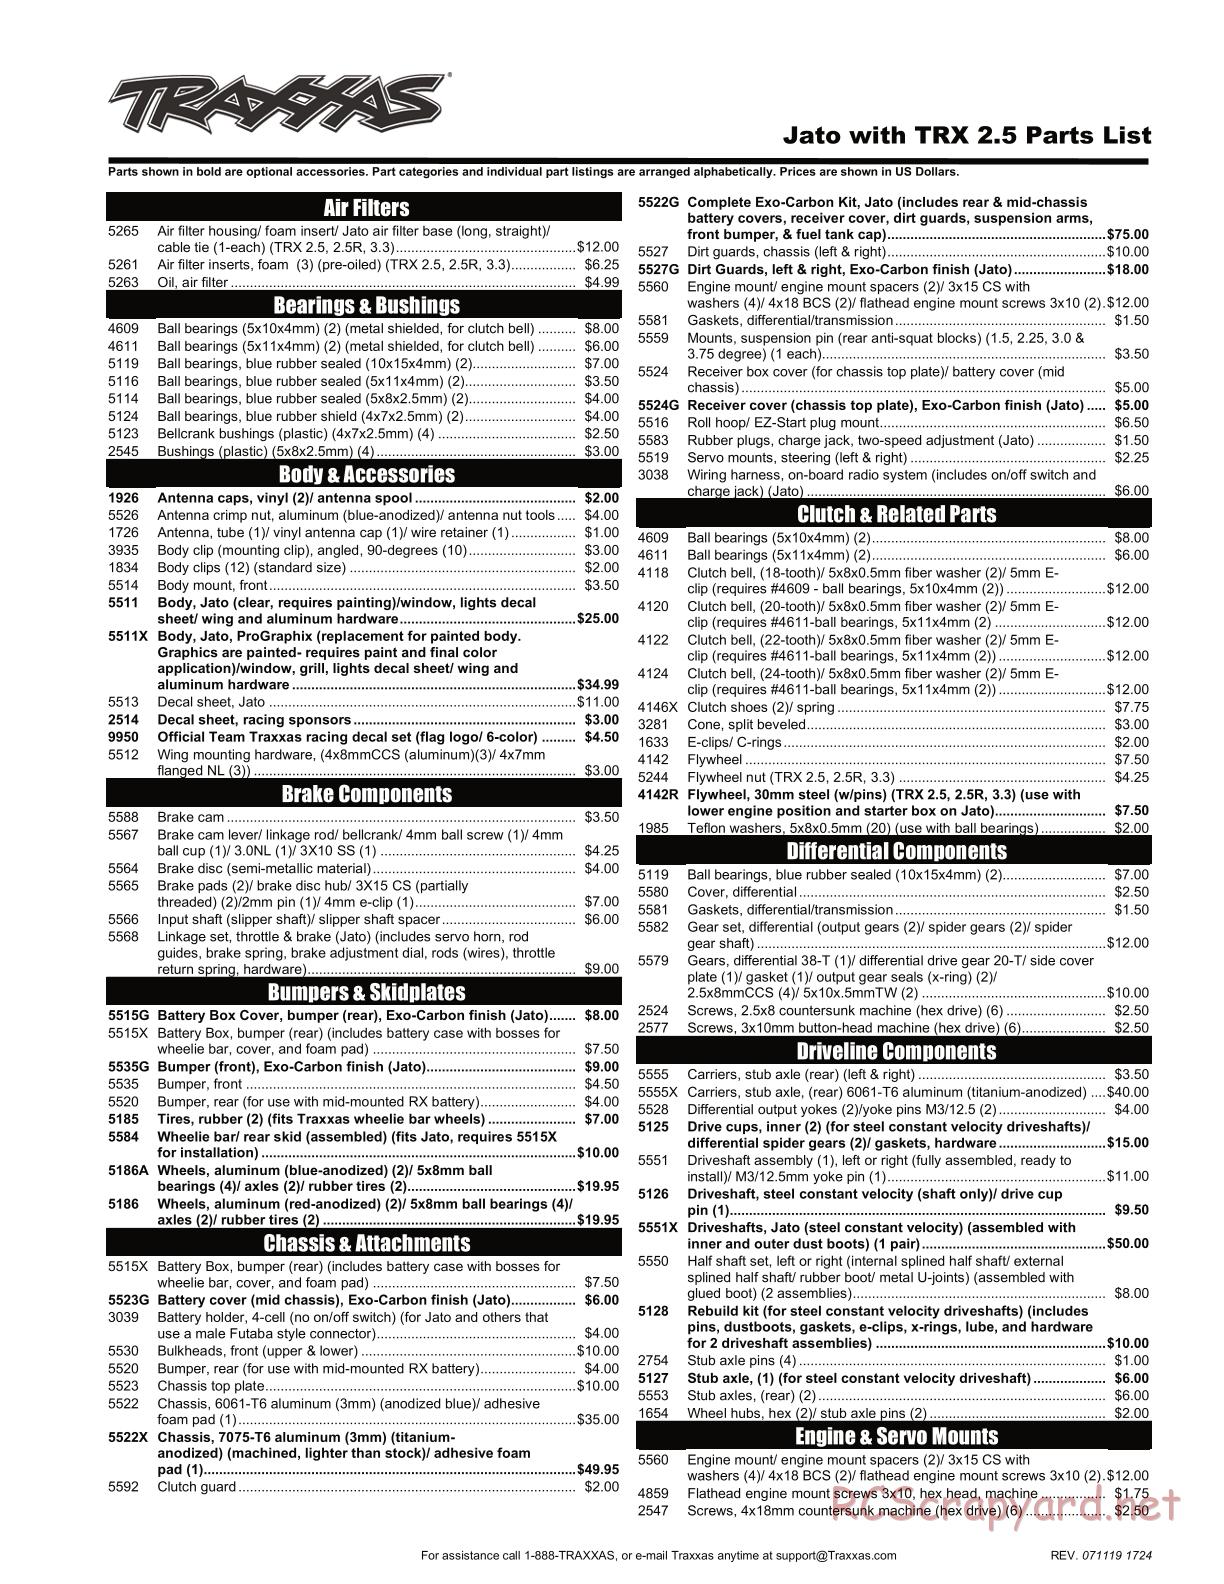 Traxxas - Jato 2.5 (2005) - Parts List - Page 1